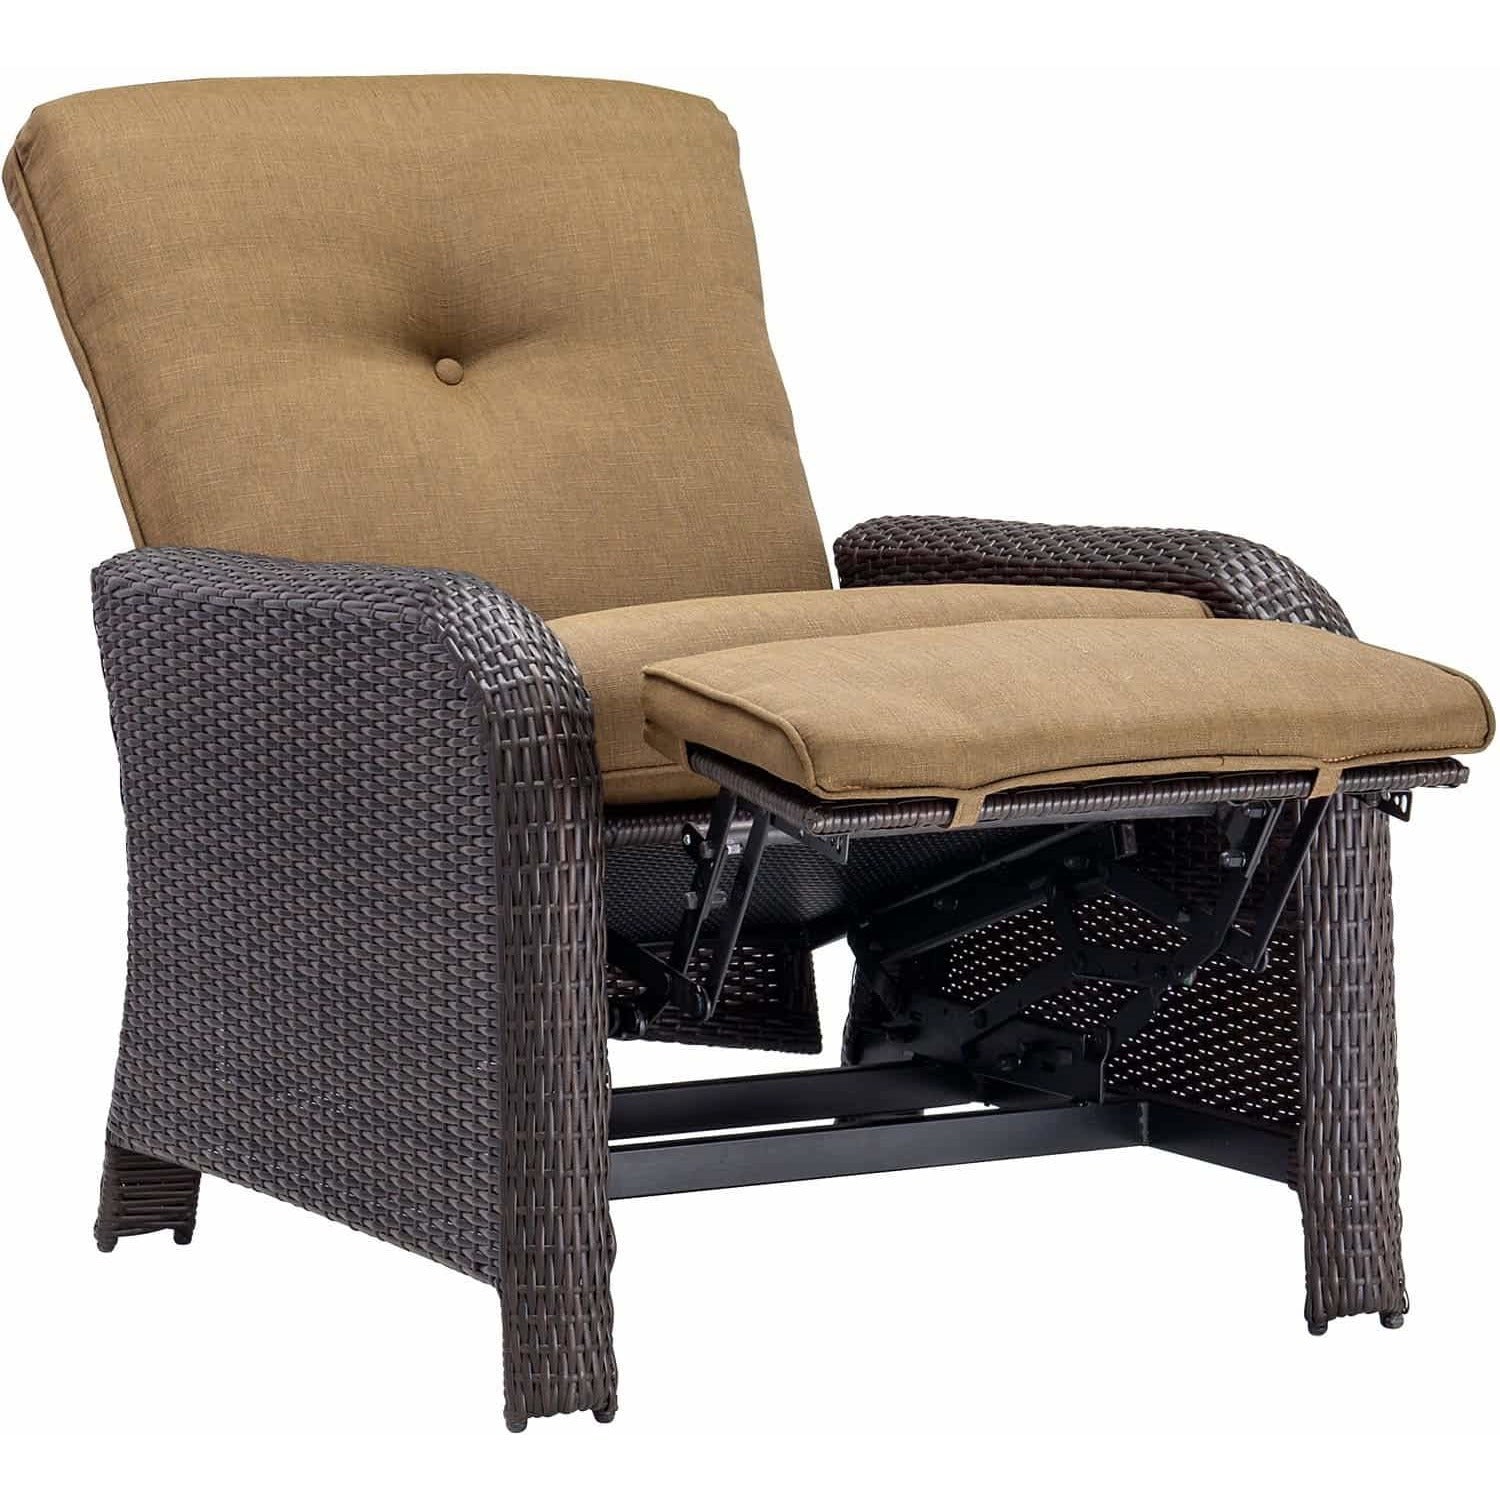 Hammond Atlantic outdoor recliner chair - M&K Grills